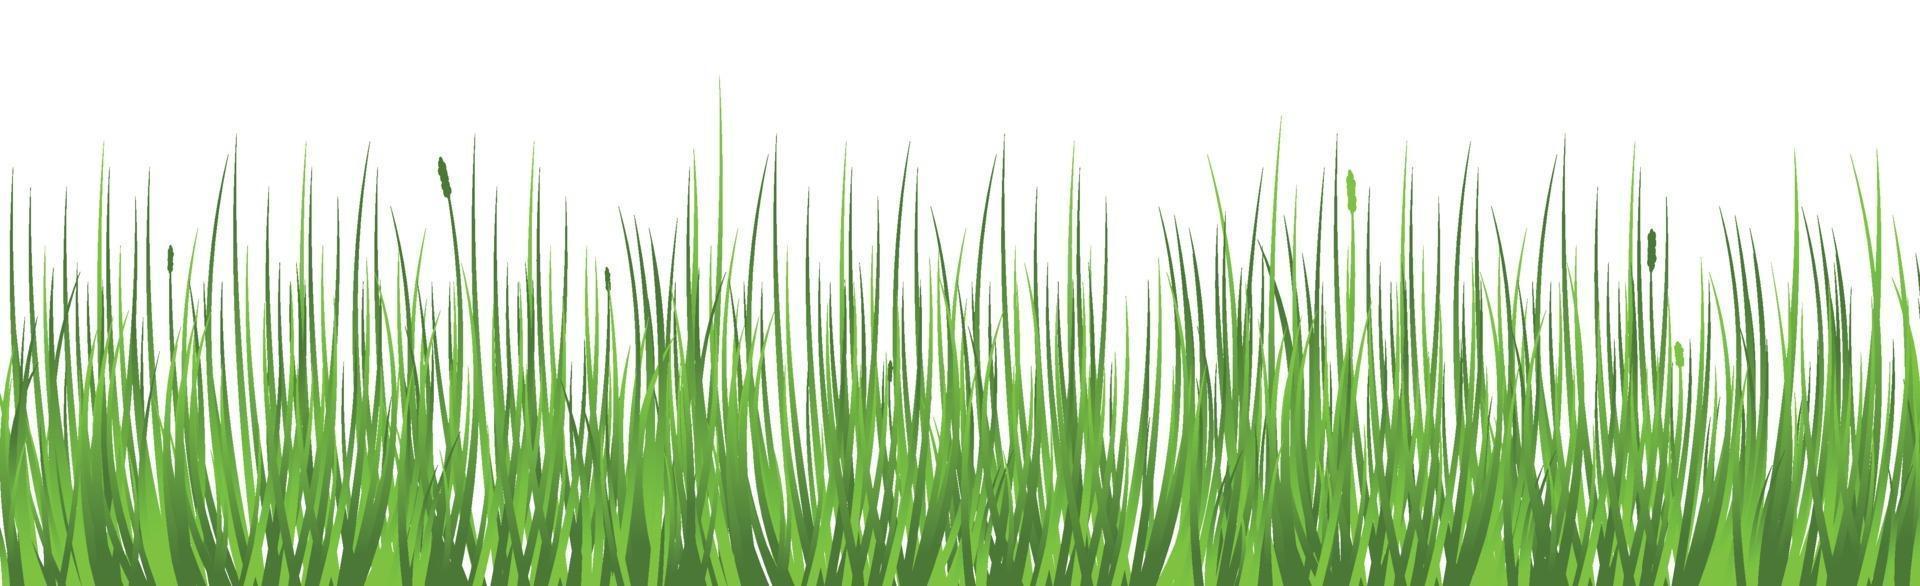 groen sappig gras op een witte achtergrond vector